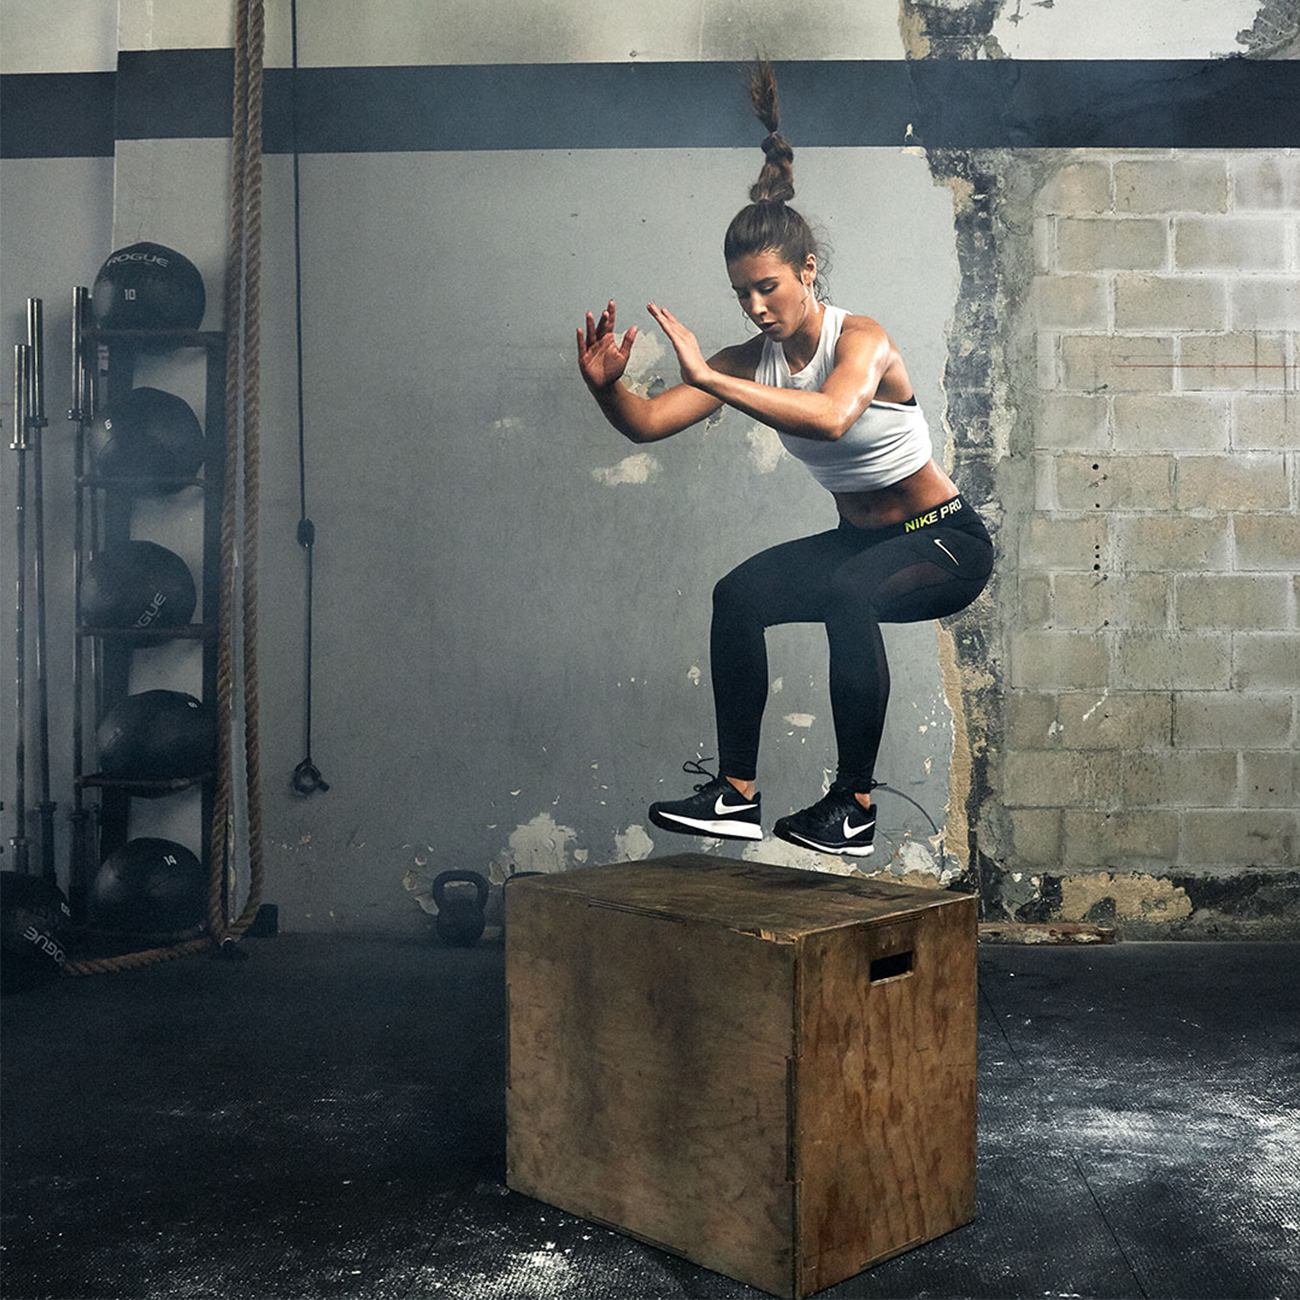 sportašica skače na drvenu kutiju za cross fit dok vježba u teretani.